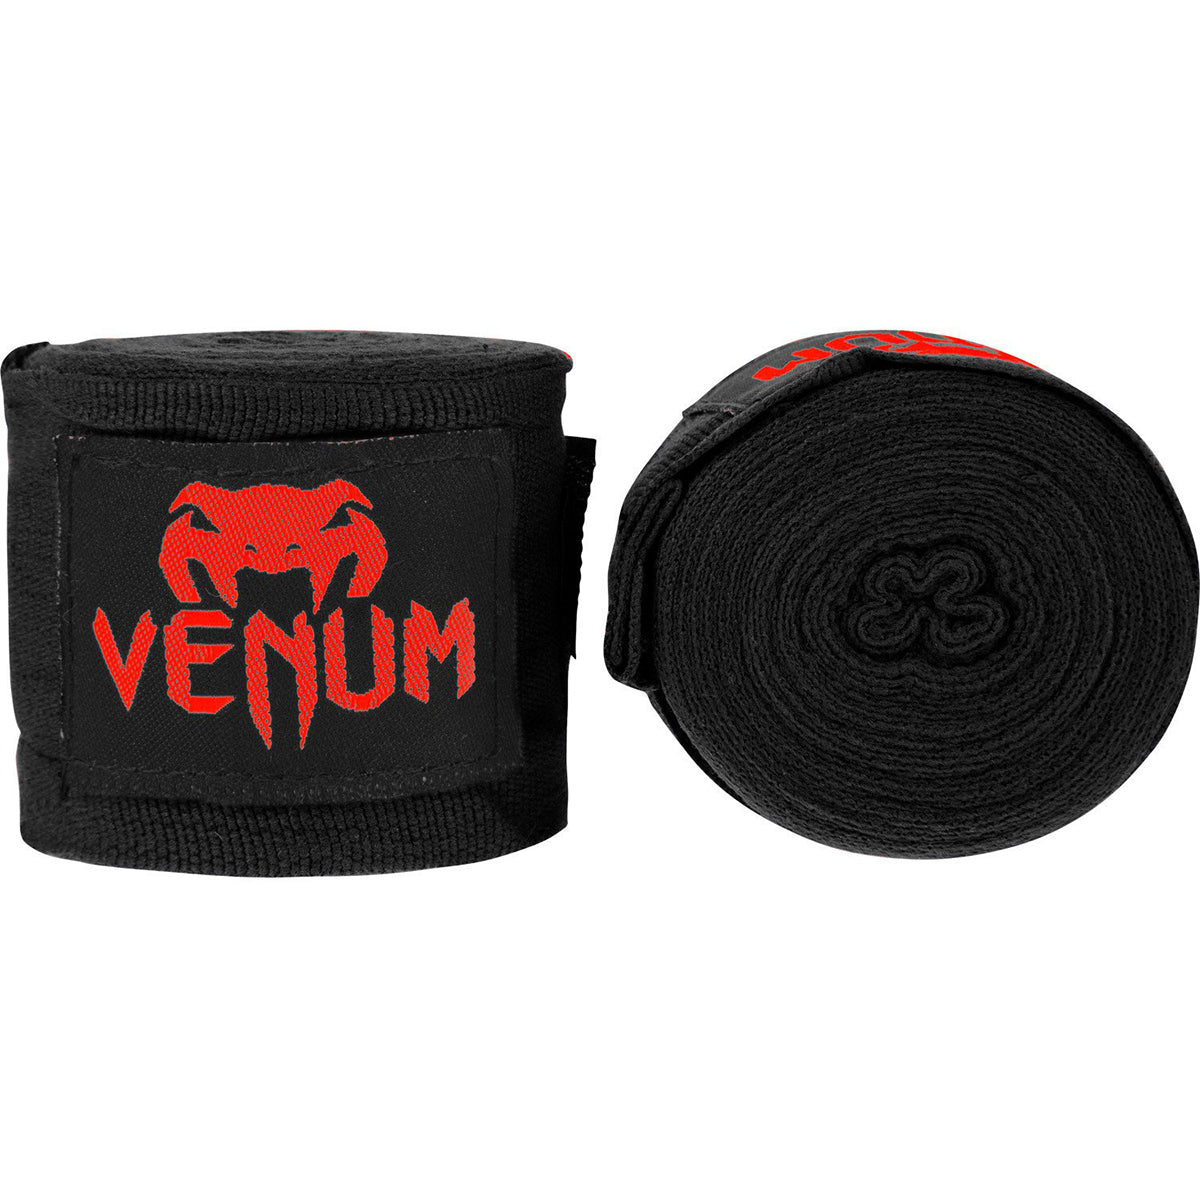 Venum Kontact 4m Elastic Cotton Mexican Style Protective Boxing Handwraps Venum